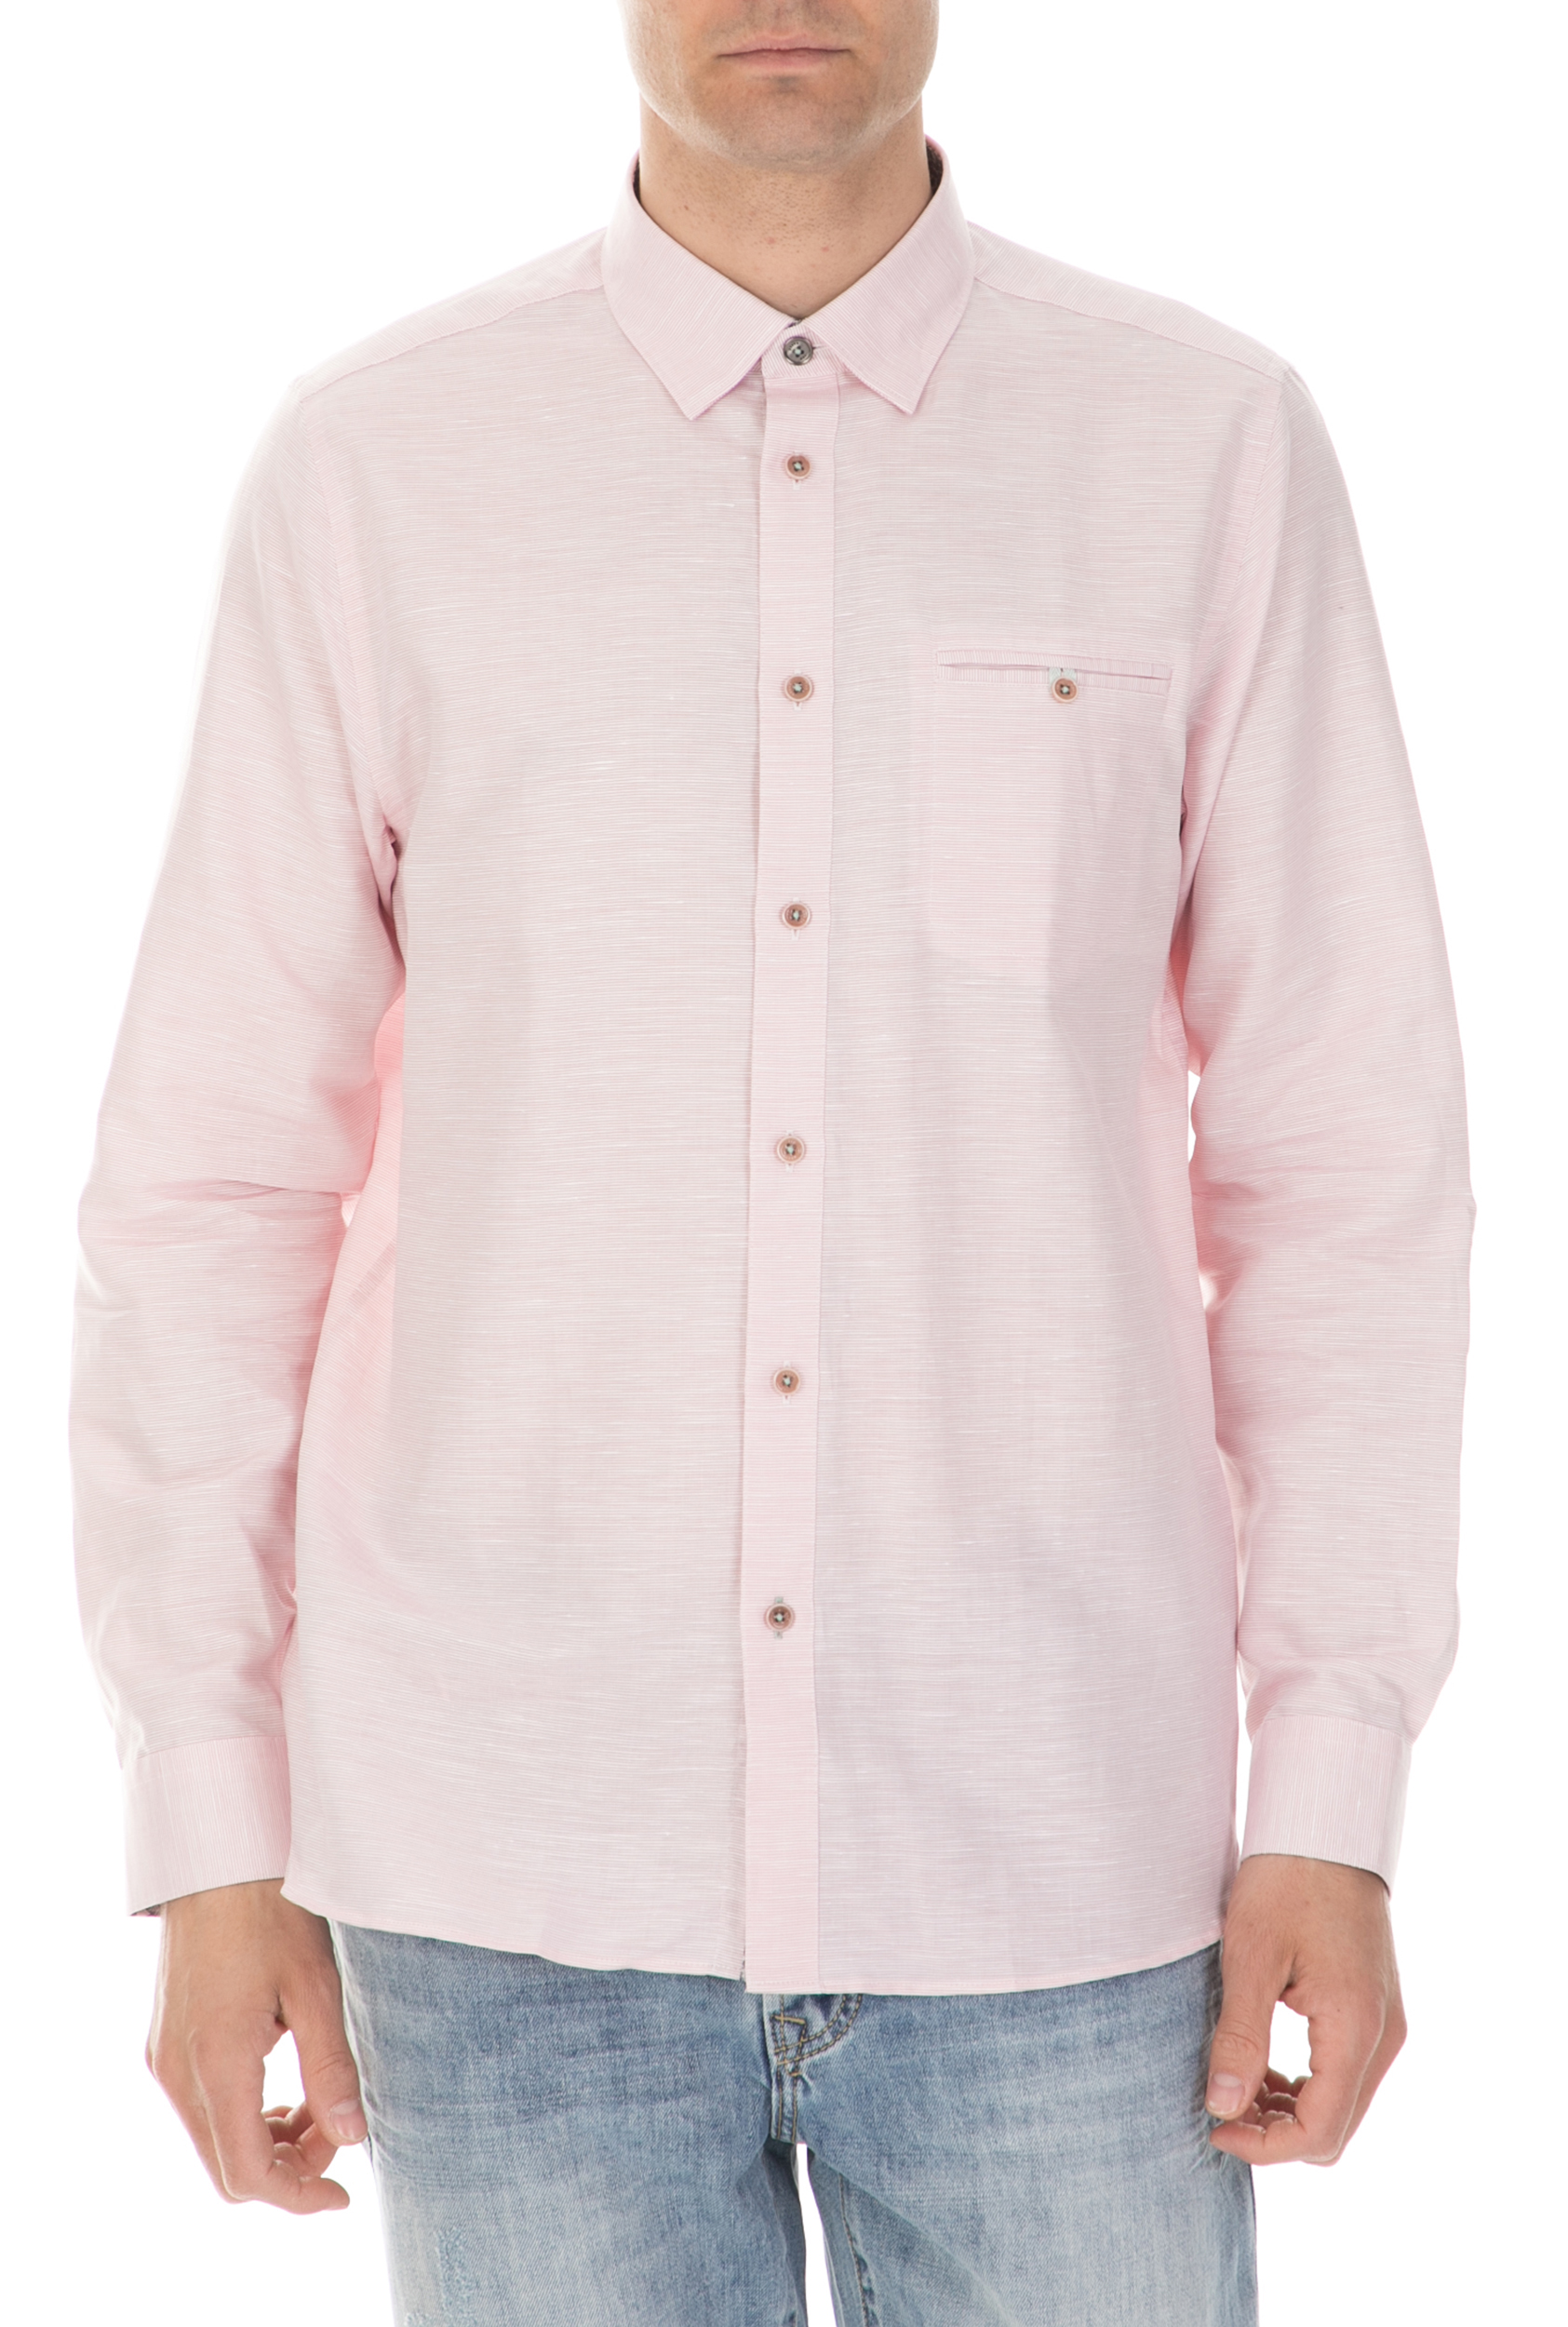 TED BAKER - Ανδρικό μακρυμάνικο πουκάμισο TED BAKER RABBBT ροζ Ανδρικά/Ρούχα/Πουκάμισα/Μακρυμάνικα